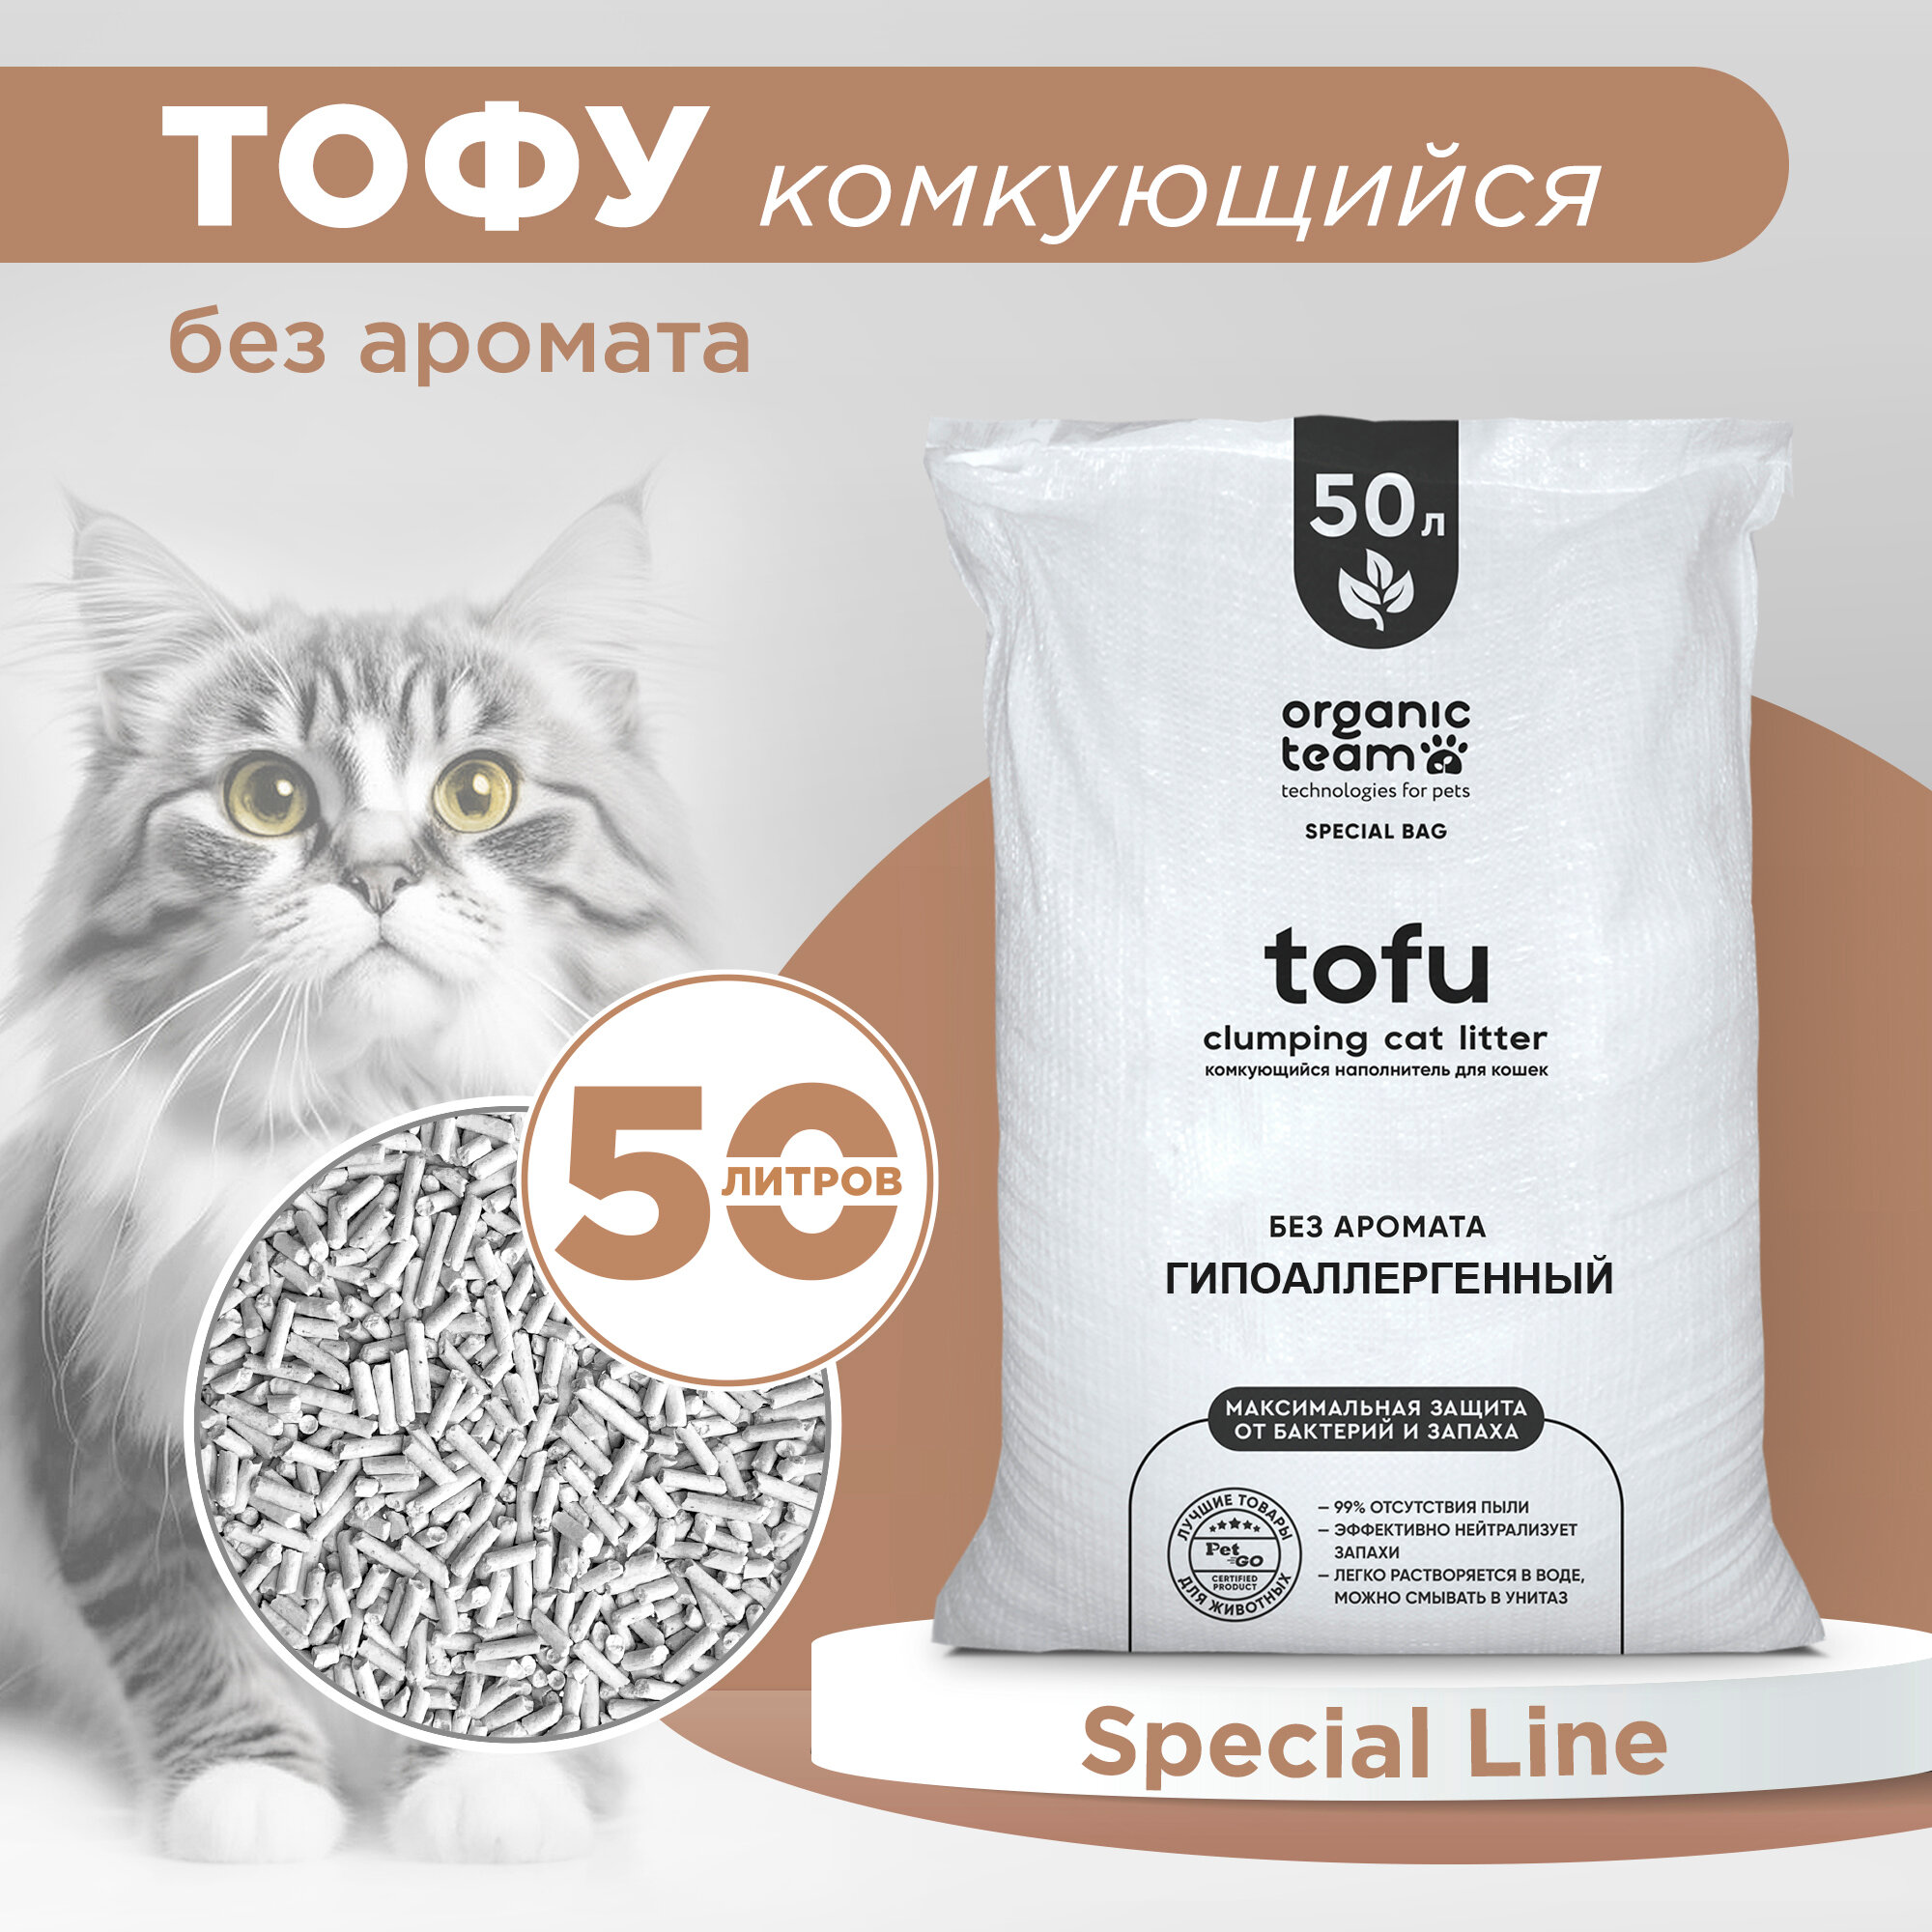 Комкующийся растительный наполнитель для кошек, гранулы тофу (tofu), для ухода за лотком кошачьего туалета, Organic Team гипоаллергенный без аромата, 20 кг, 50 л